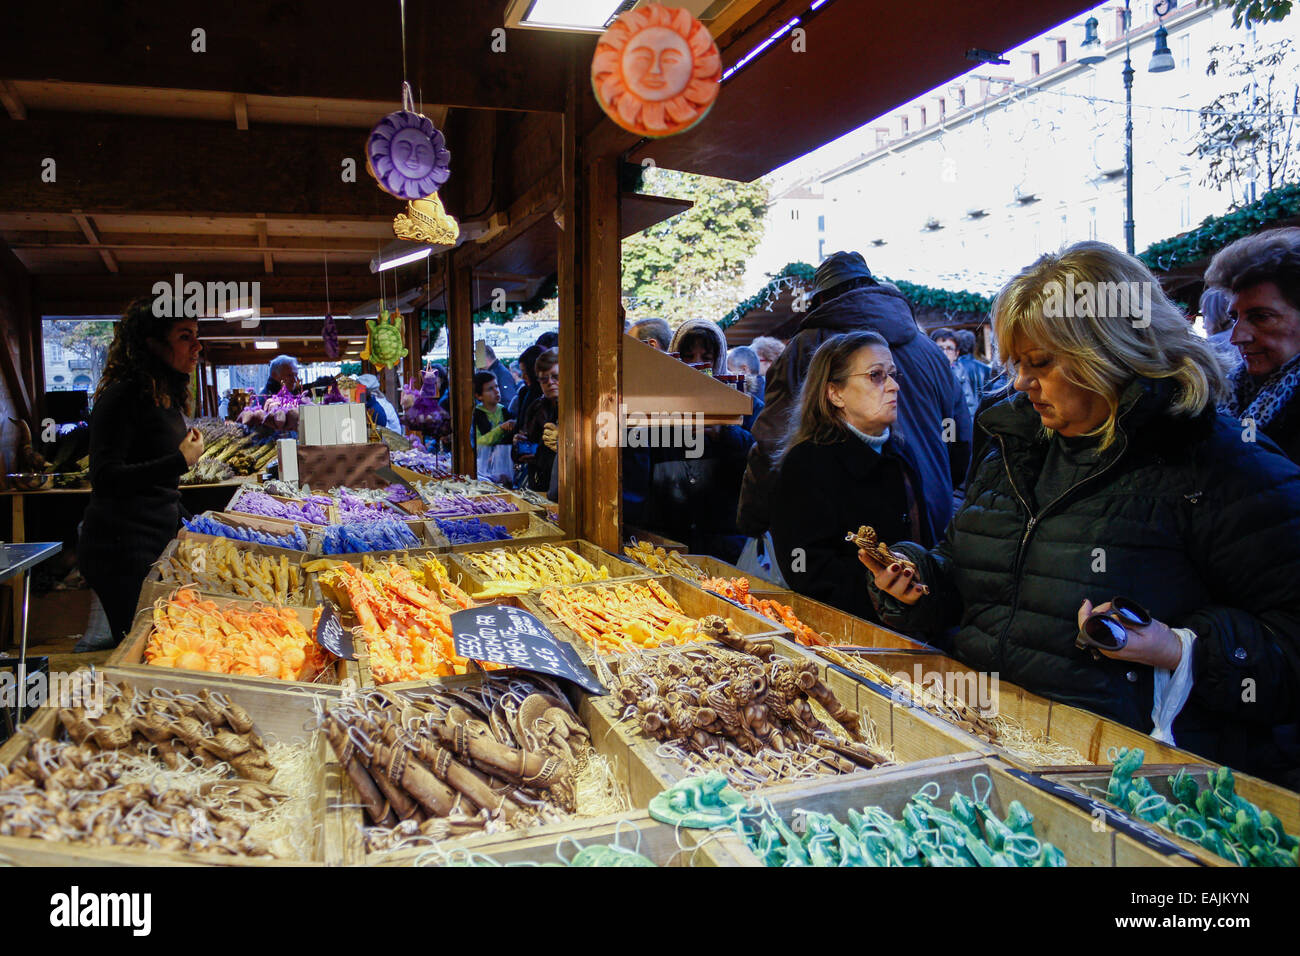 Le marché de Noël traditionnel français, conçu avec des chalets individuels, seront visités à Turin jusqu'au 23 novembre, où les produits typiquement français pour la prochaine saison de Noël peut être acheté. © Elena Aquila/Pacific Press/Alamy Live News Banque D'Images